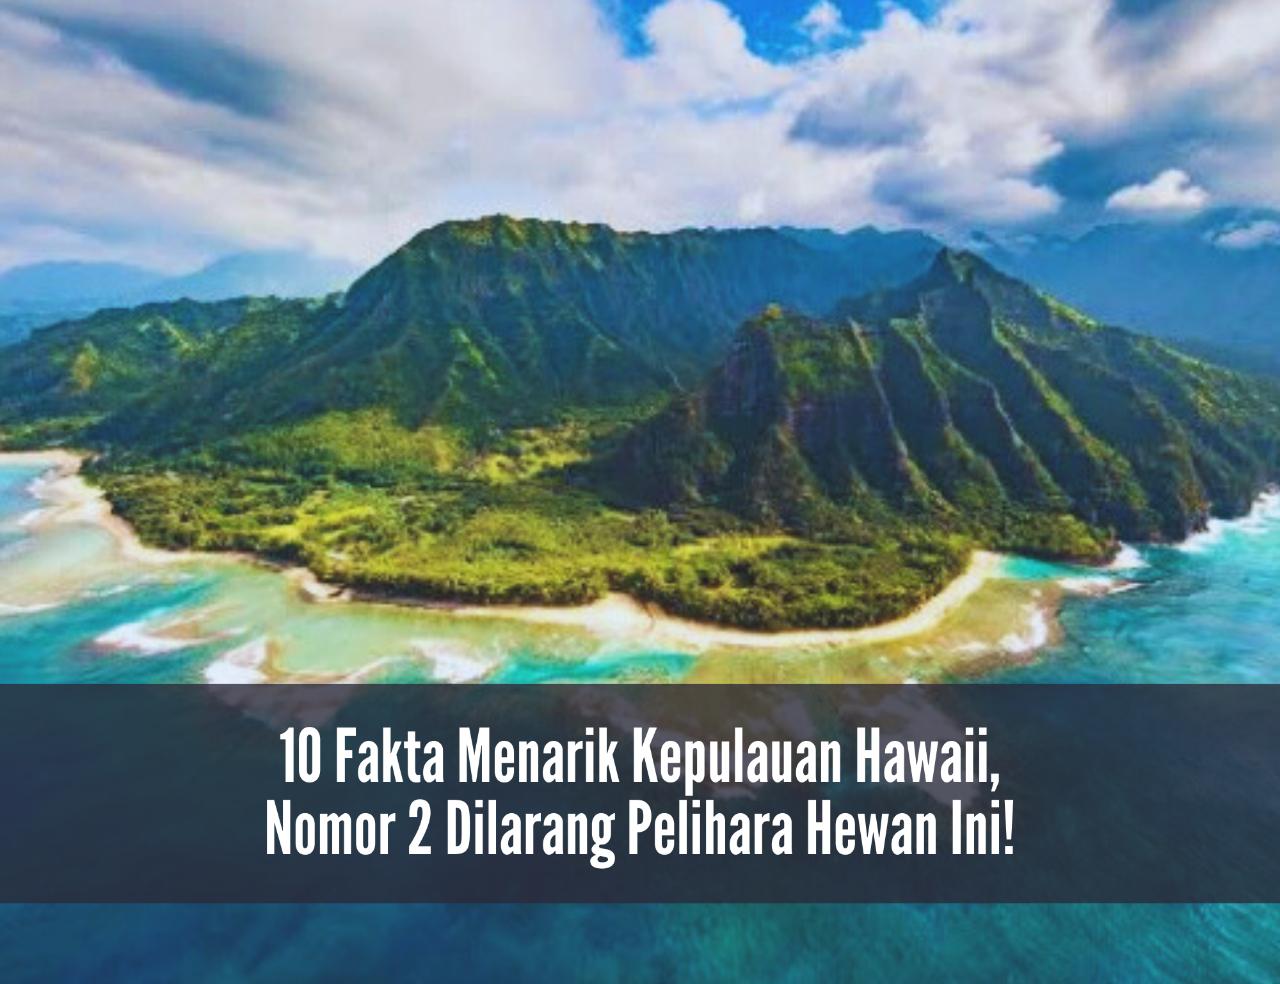 10 Fakta Menarik Kepulauan Hawaii, Nomor 2 Dilarang Pelihara Hewan Ini!